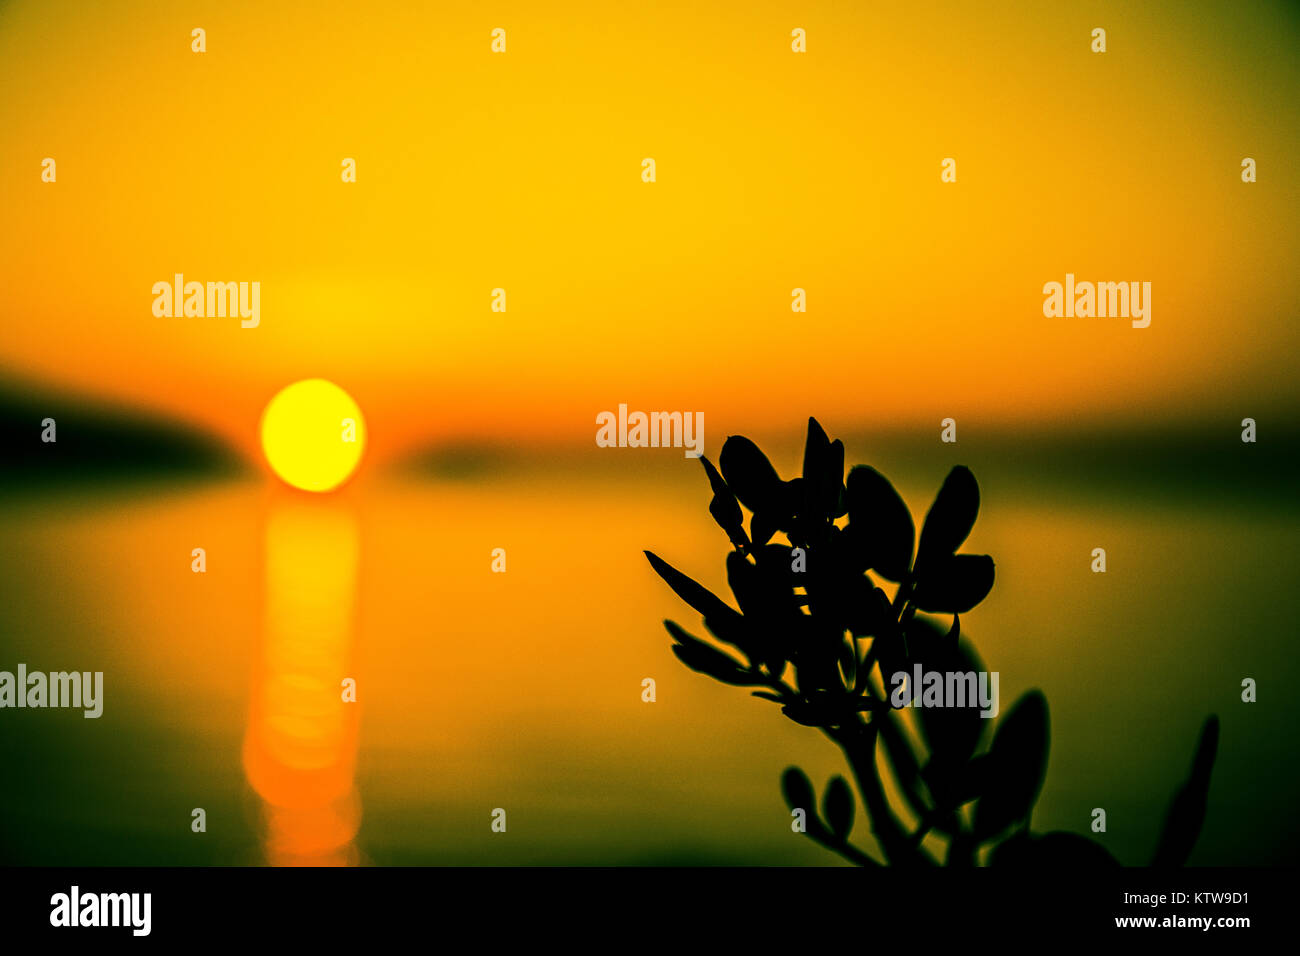 Incredibile sfondo astratto. Bellissimo tramonto astratto colori da qualche parte in Croazia. Pianta selvatica come soggetto principale. Foto Stock